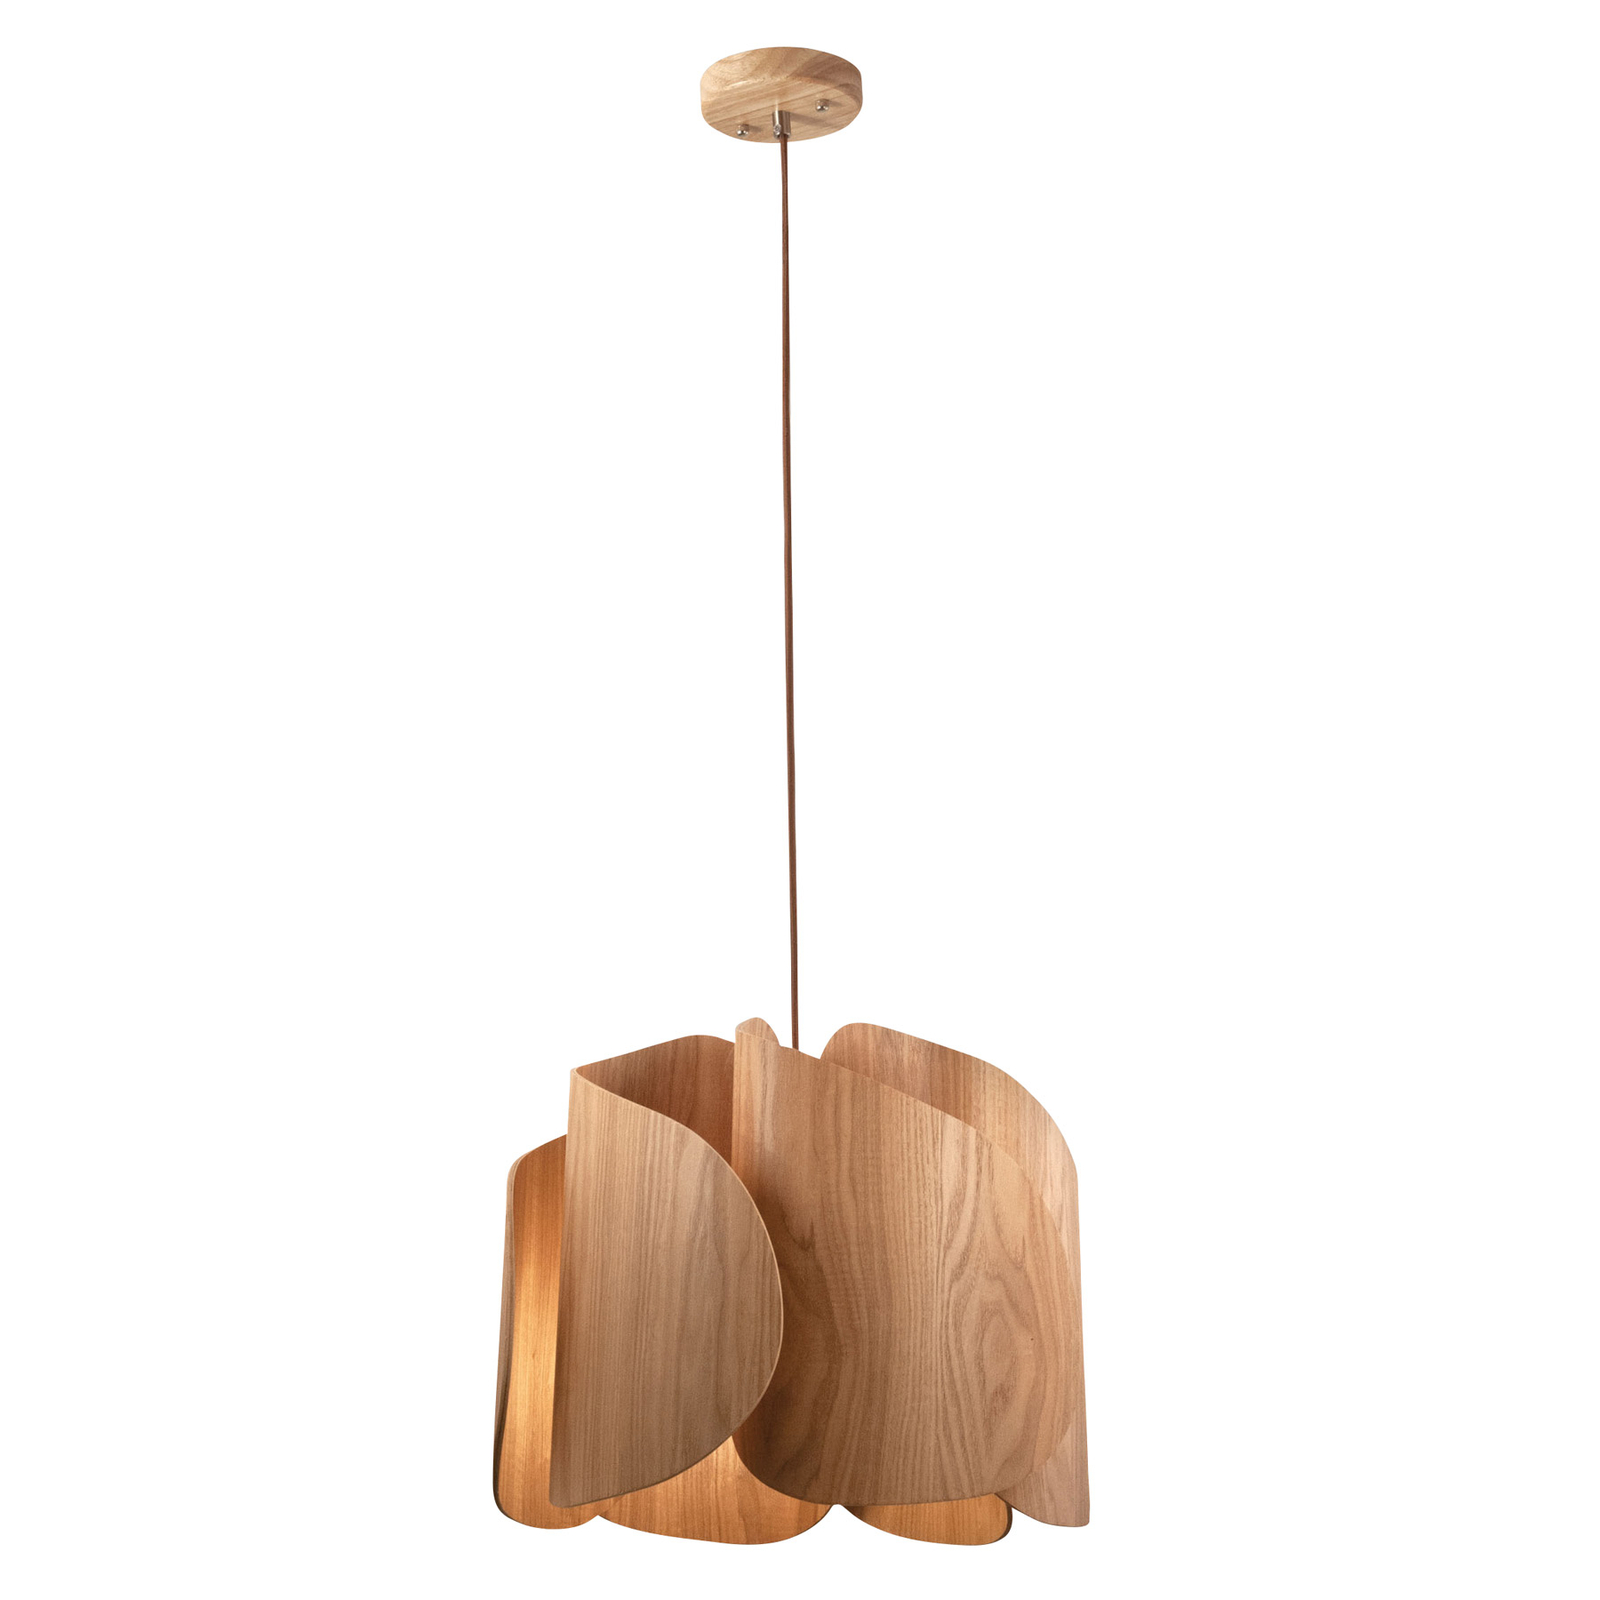 Pevero hængelampe af asketræ, buet form